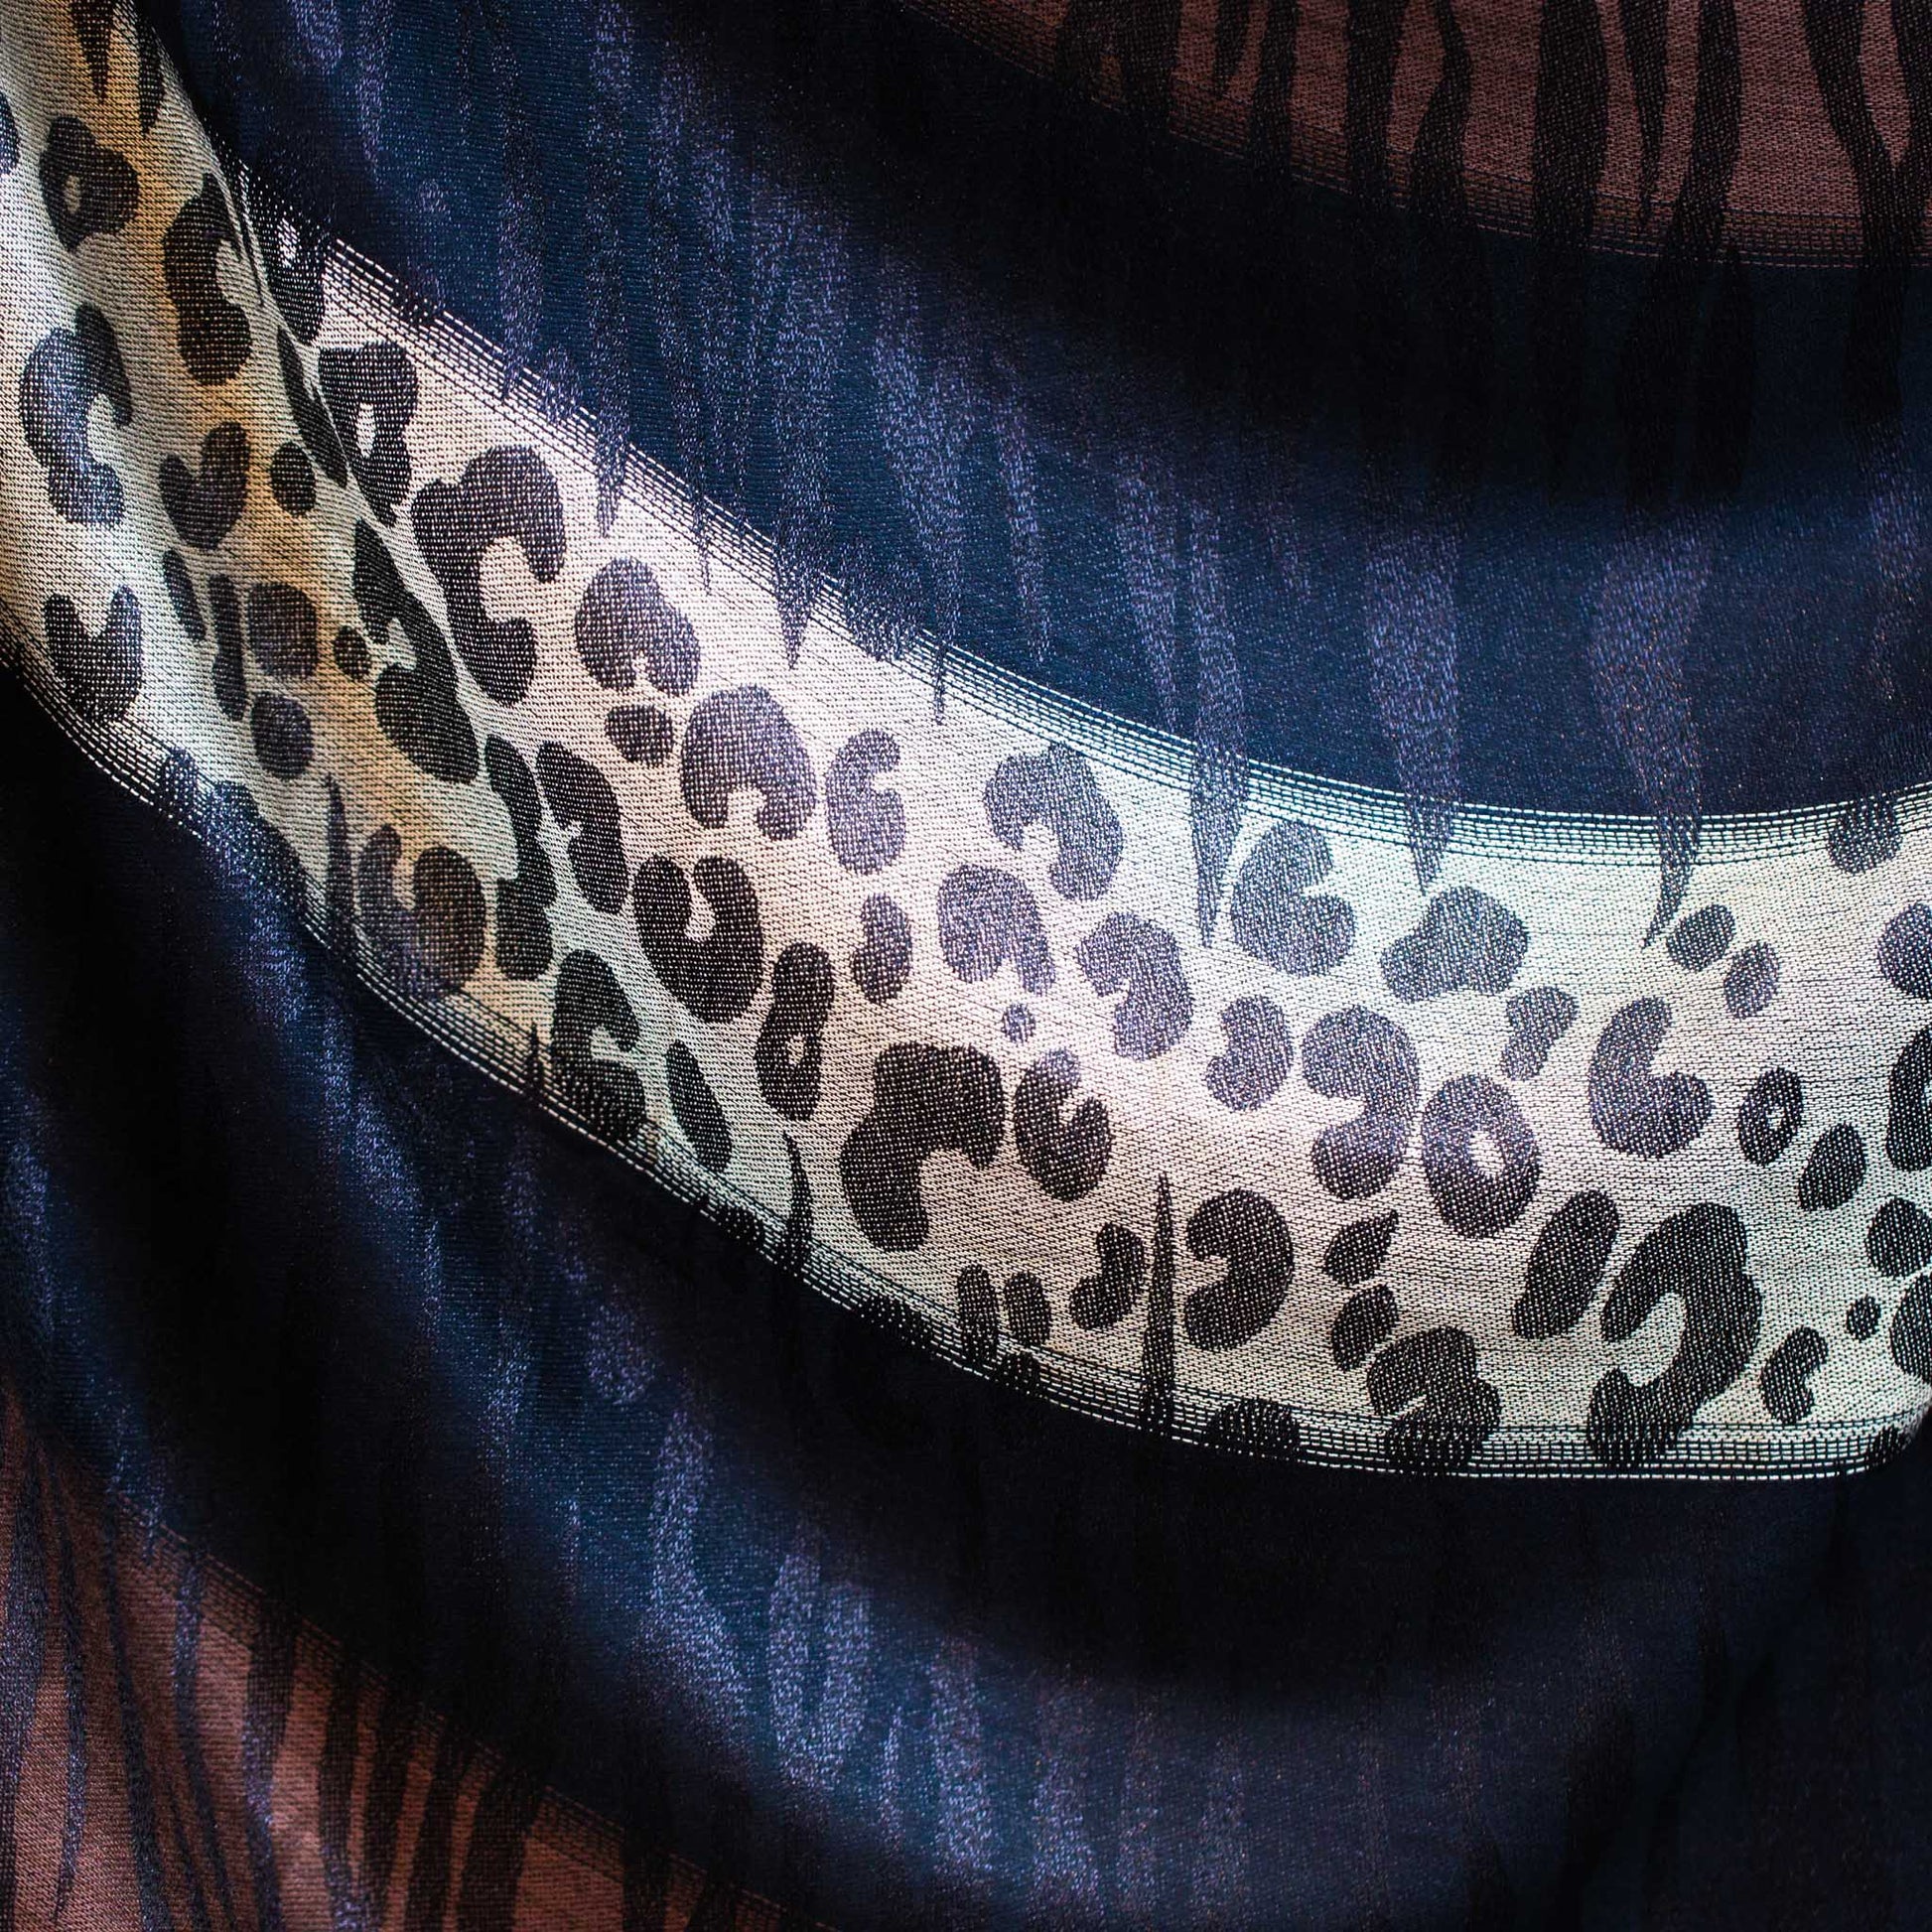 Eșarfă damă cu animal print, fir sclipitor și franjuri, 180 x 70 cm - Maro, Negru, Bej